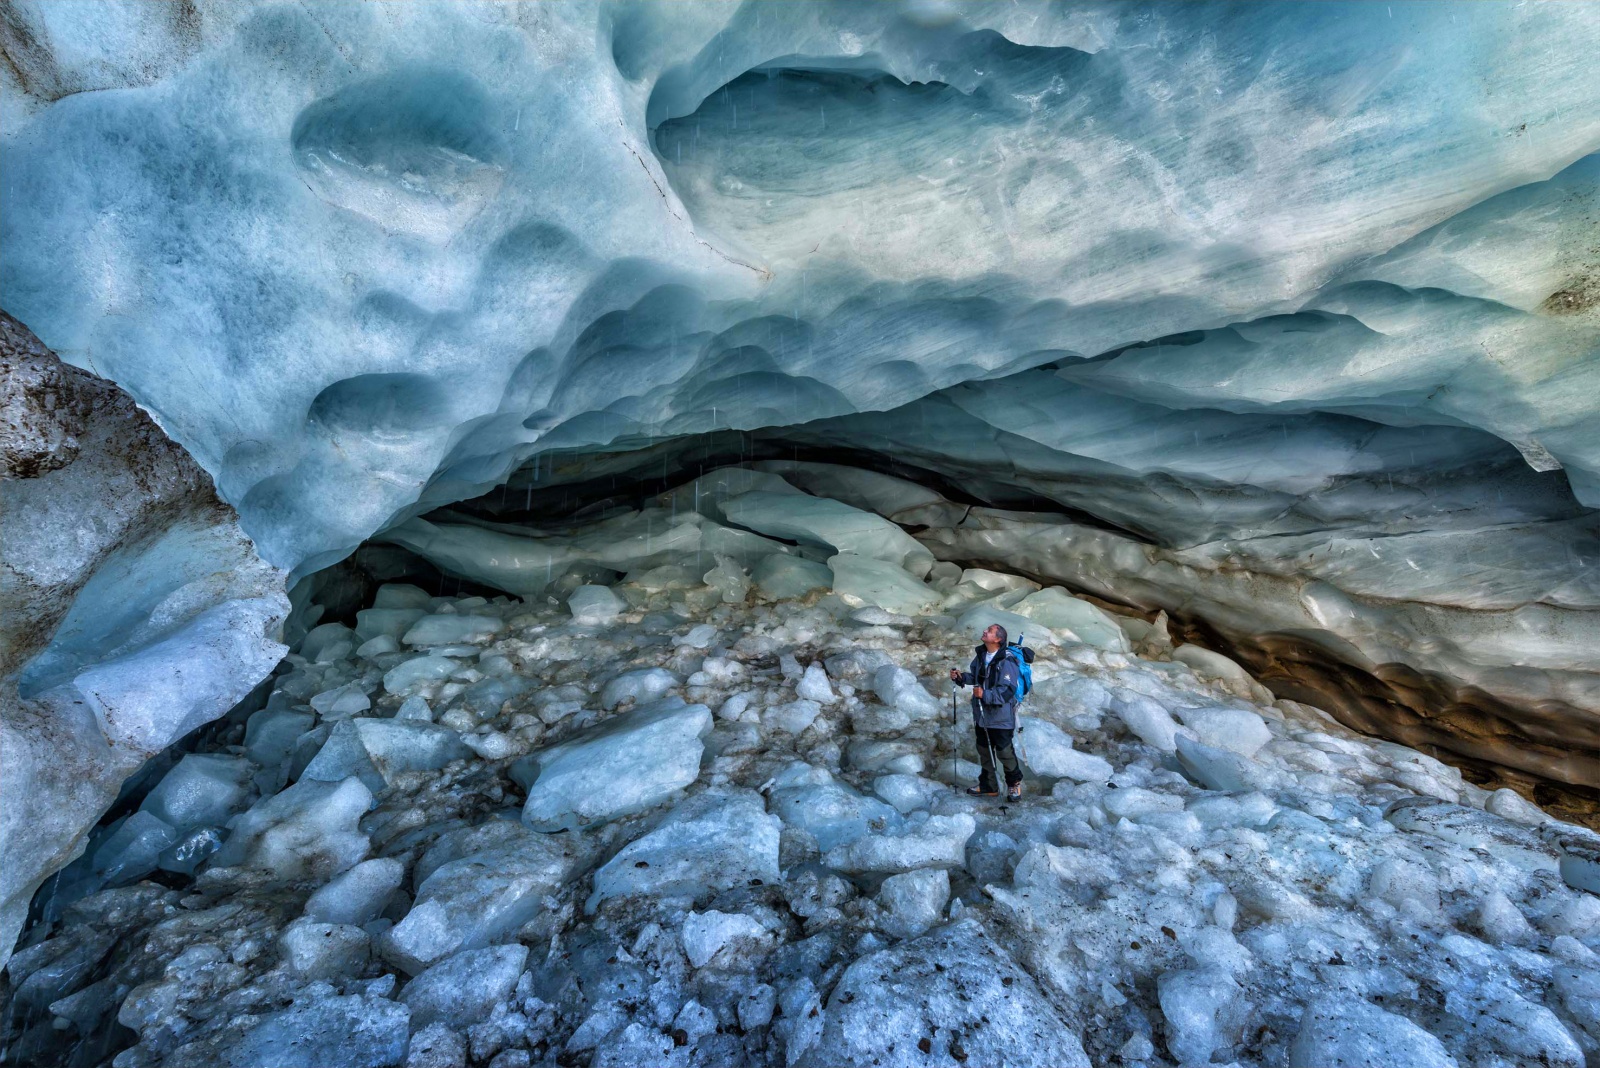 Nero Come Il Ghiaccio/National Geographic Italia - Il glaciologo Claudio Smeriglia ispeziona una grotta sub glaciale nel ghiacciaio dei forni in Valtellina. Questo ghiacciaio come molti altri nell'arco alpino si sta ritirando